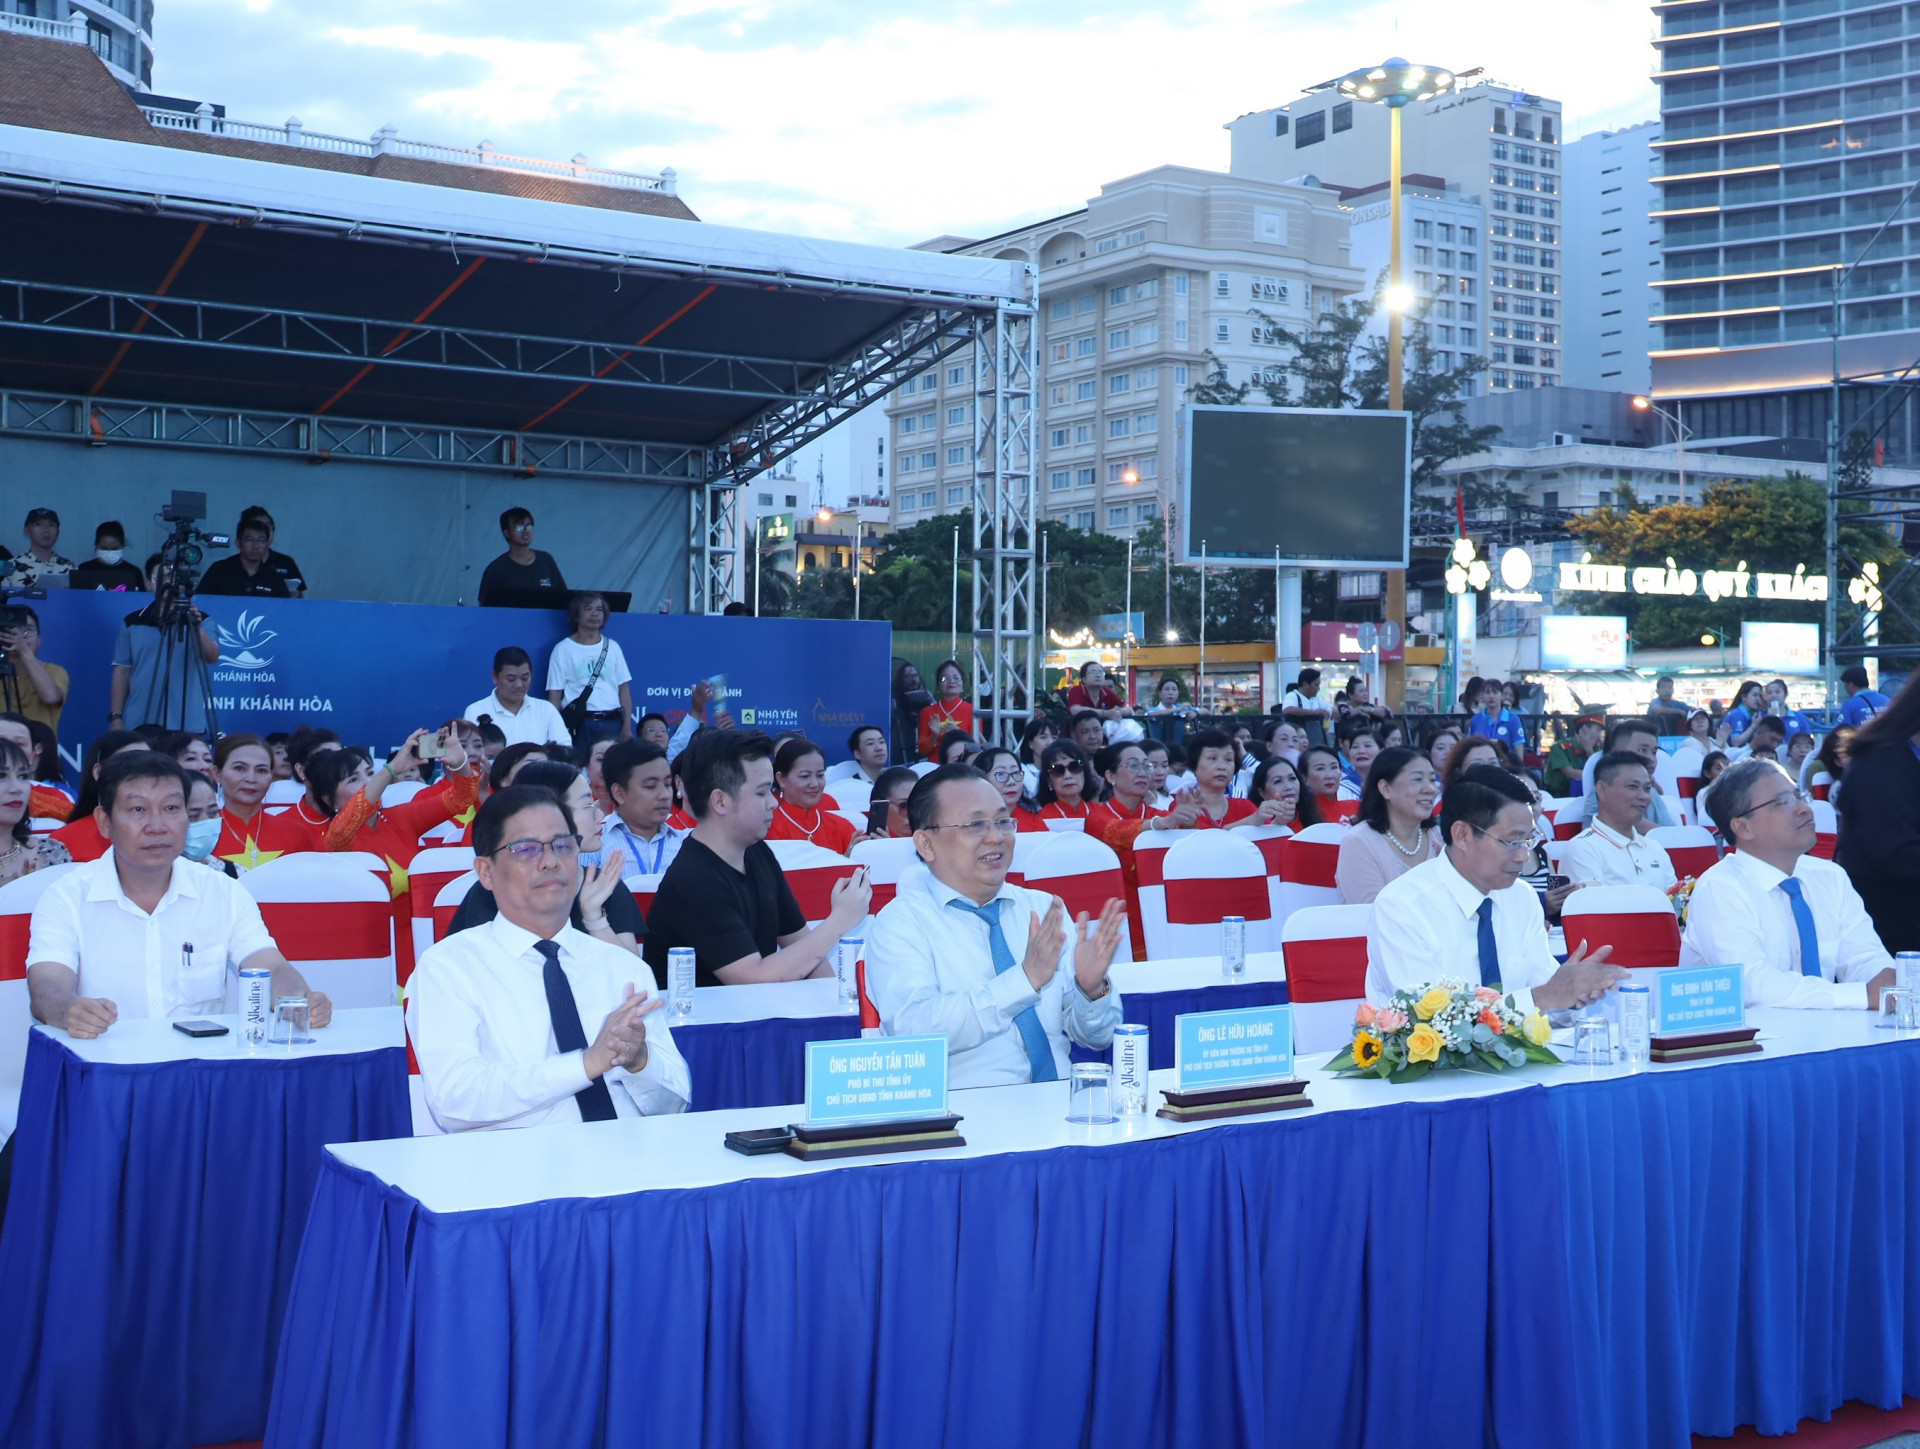 Lãnh đạo tỉnh và các đại biểu tham dự bế mạc liên hoan.
